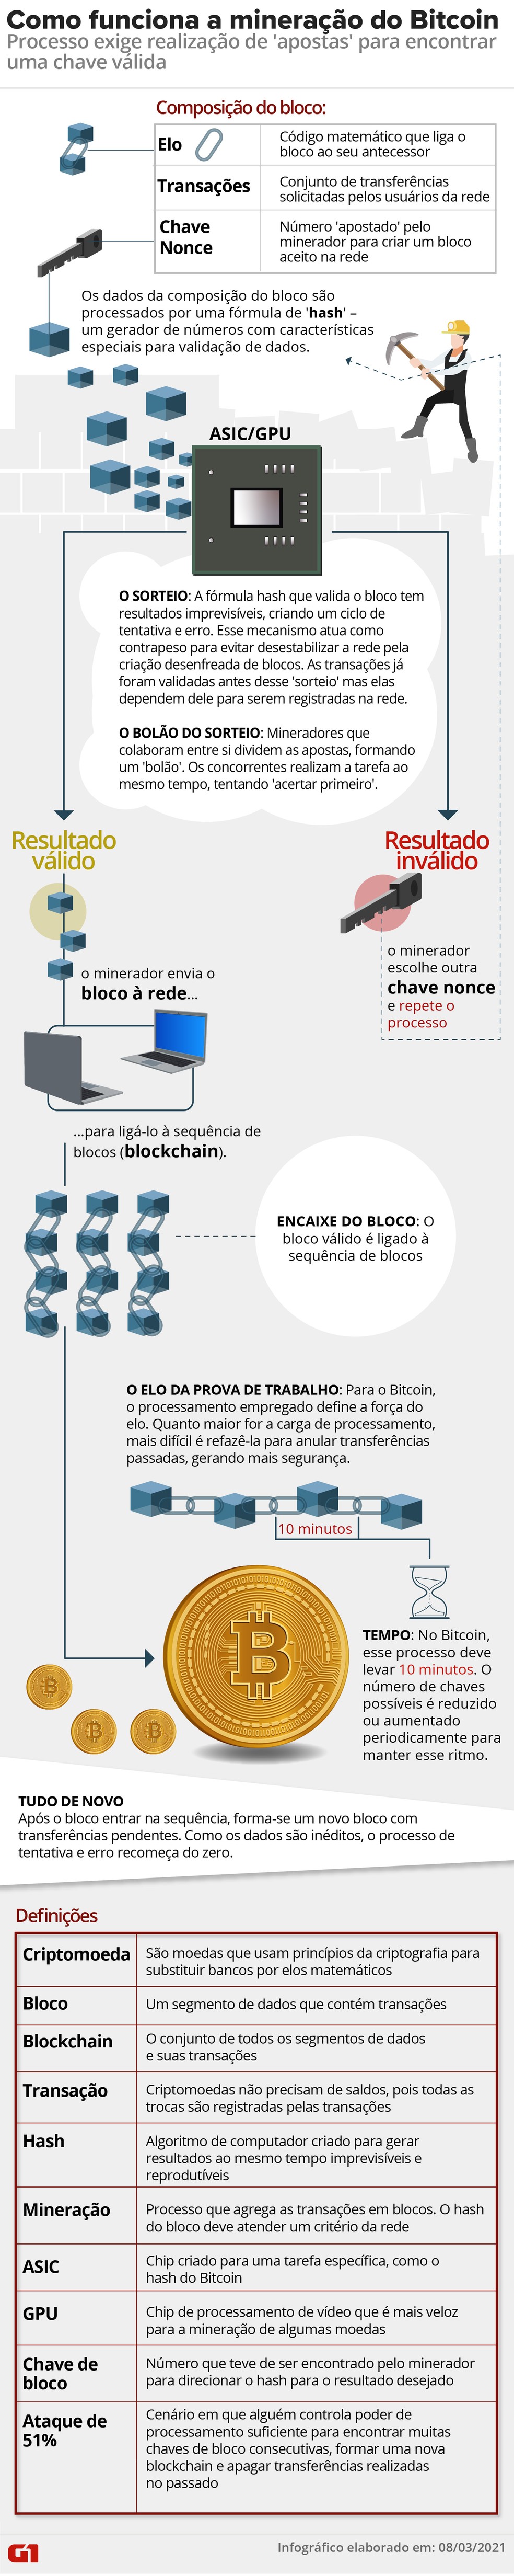 Infográfico explica mineração de bitcoins. — Foto: Wagner Magalhães/Arte G1